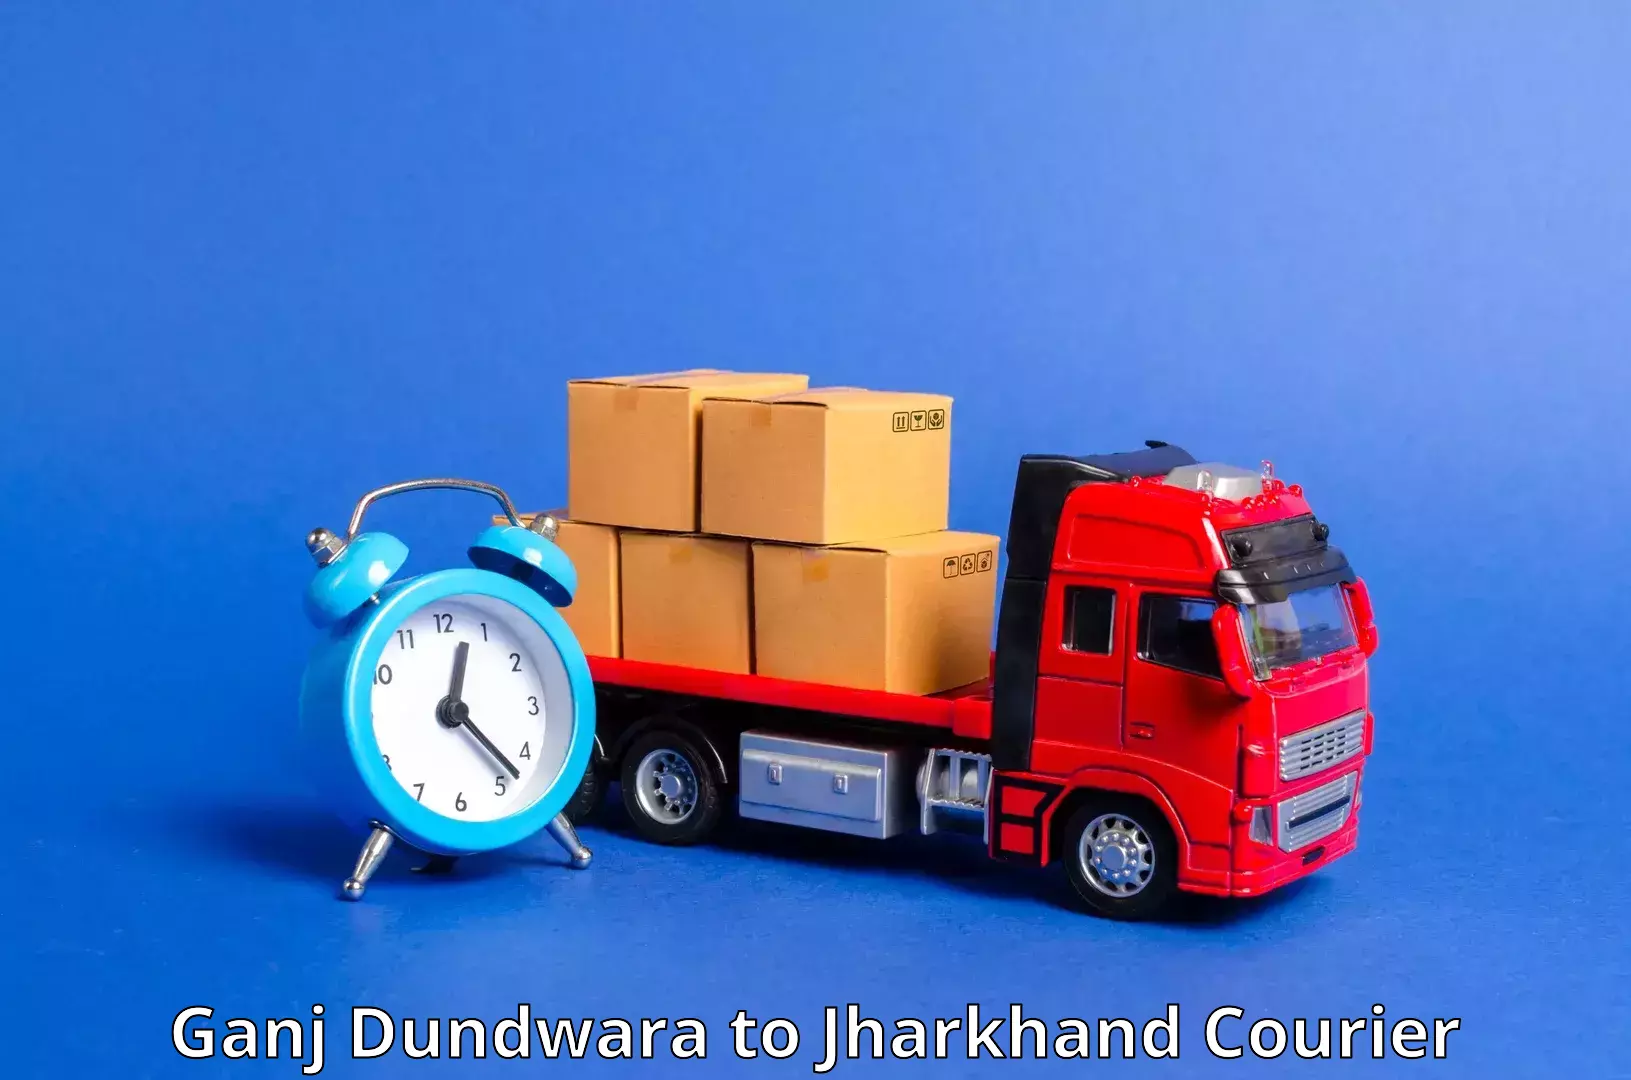 High-speed parcel service Ganj Dundwara to Peterbar